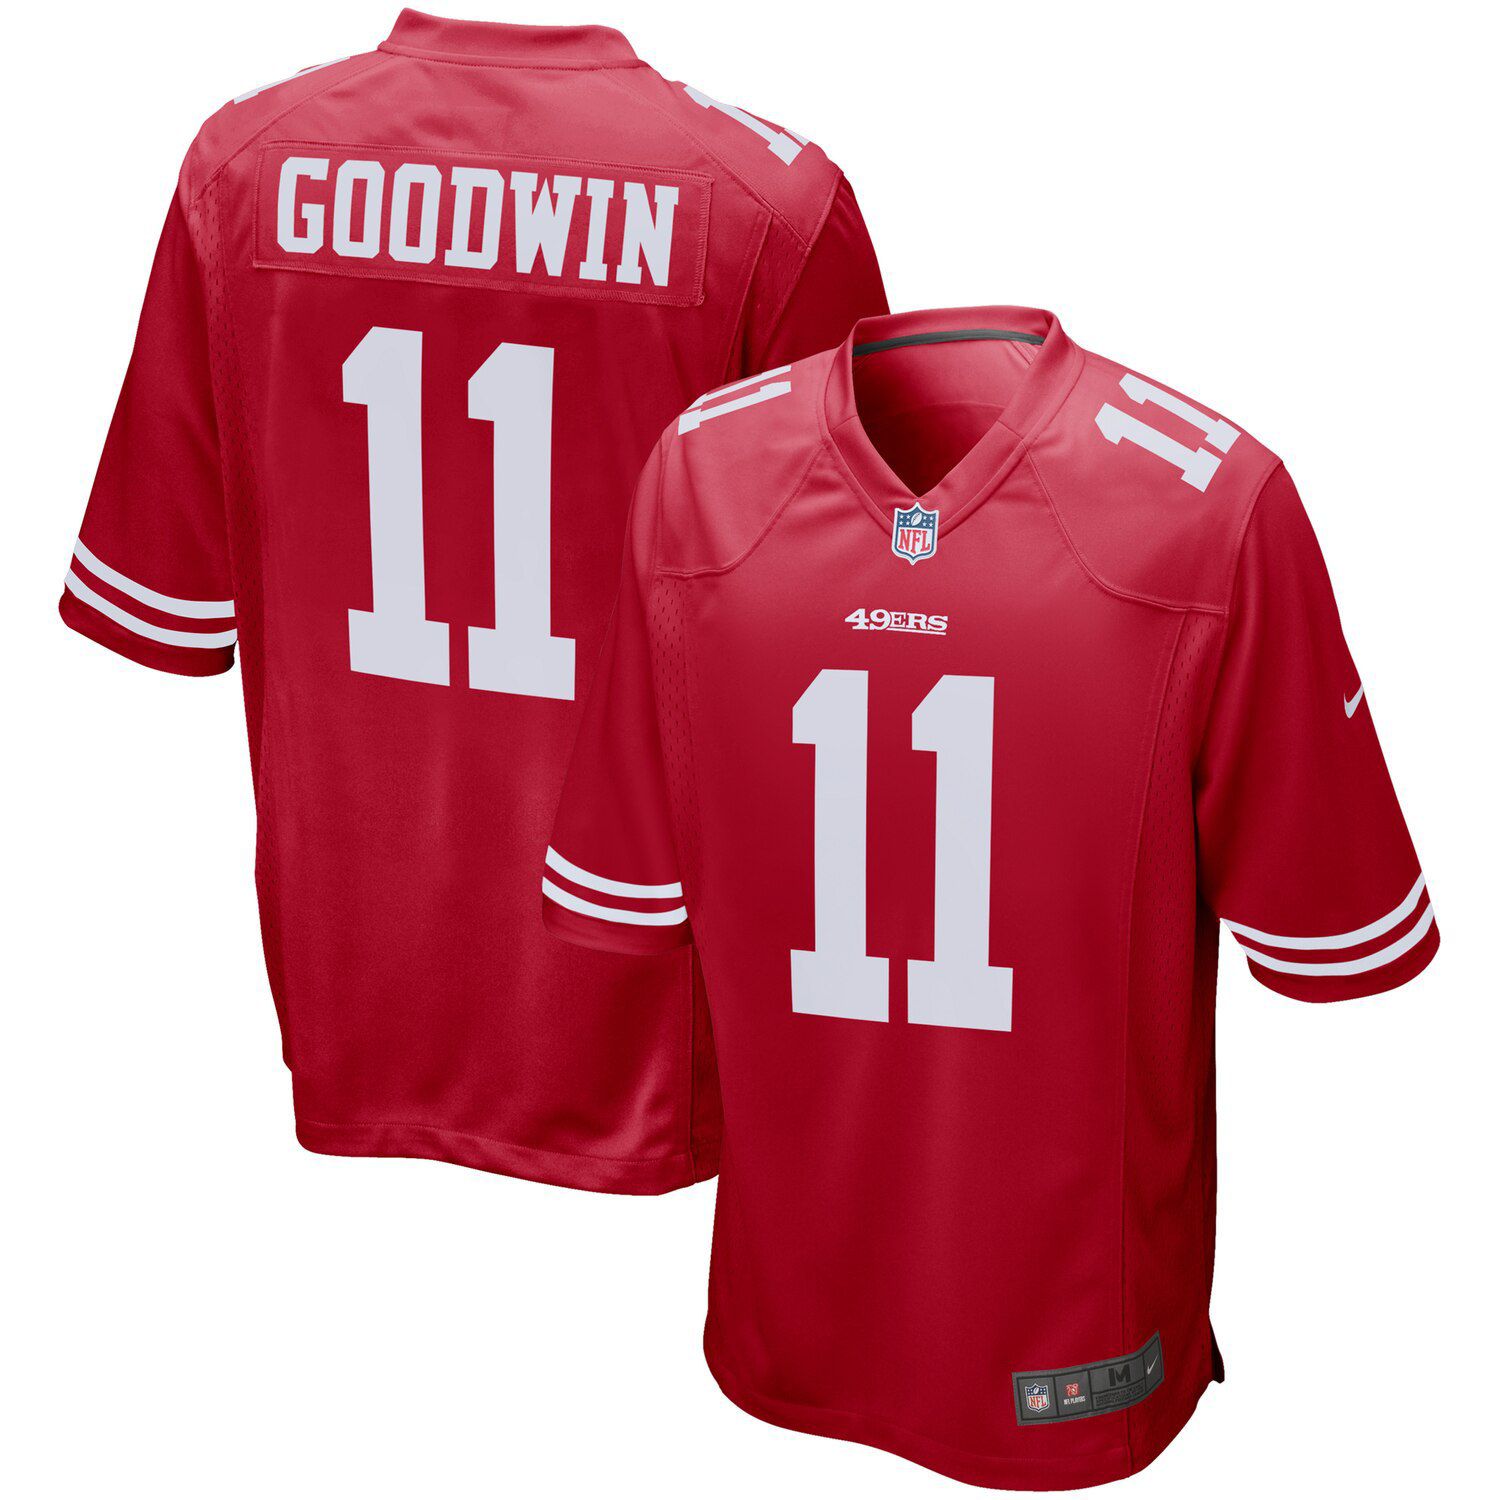 goodwin 49ers jersey